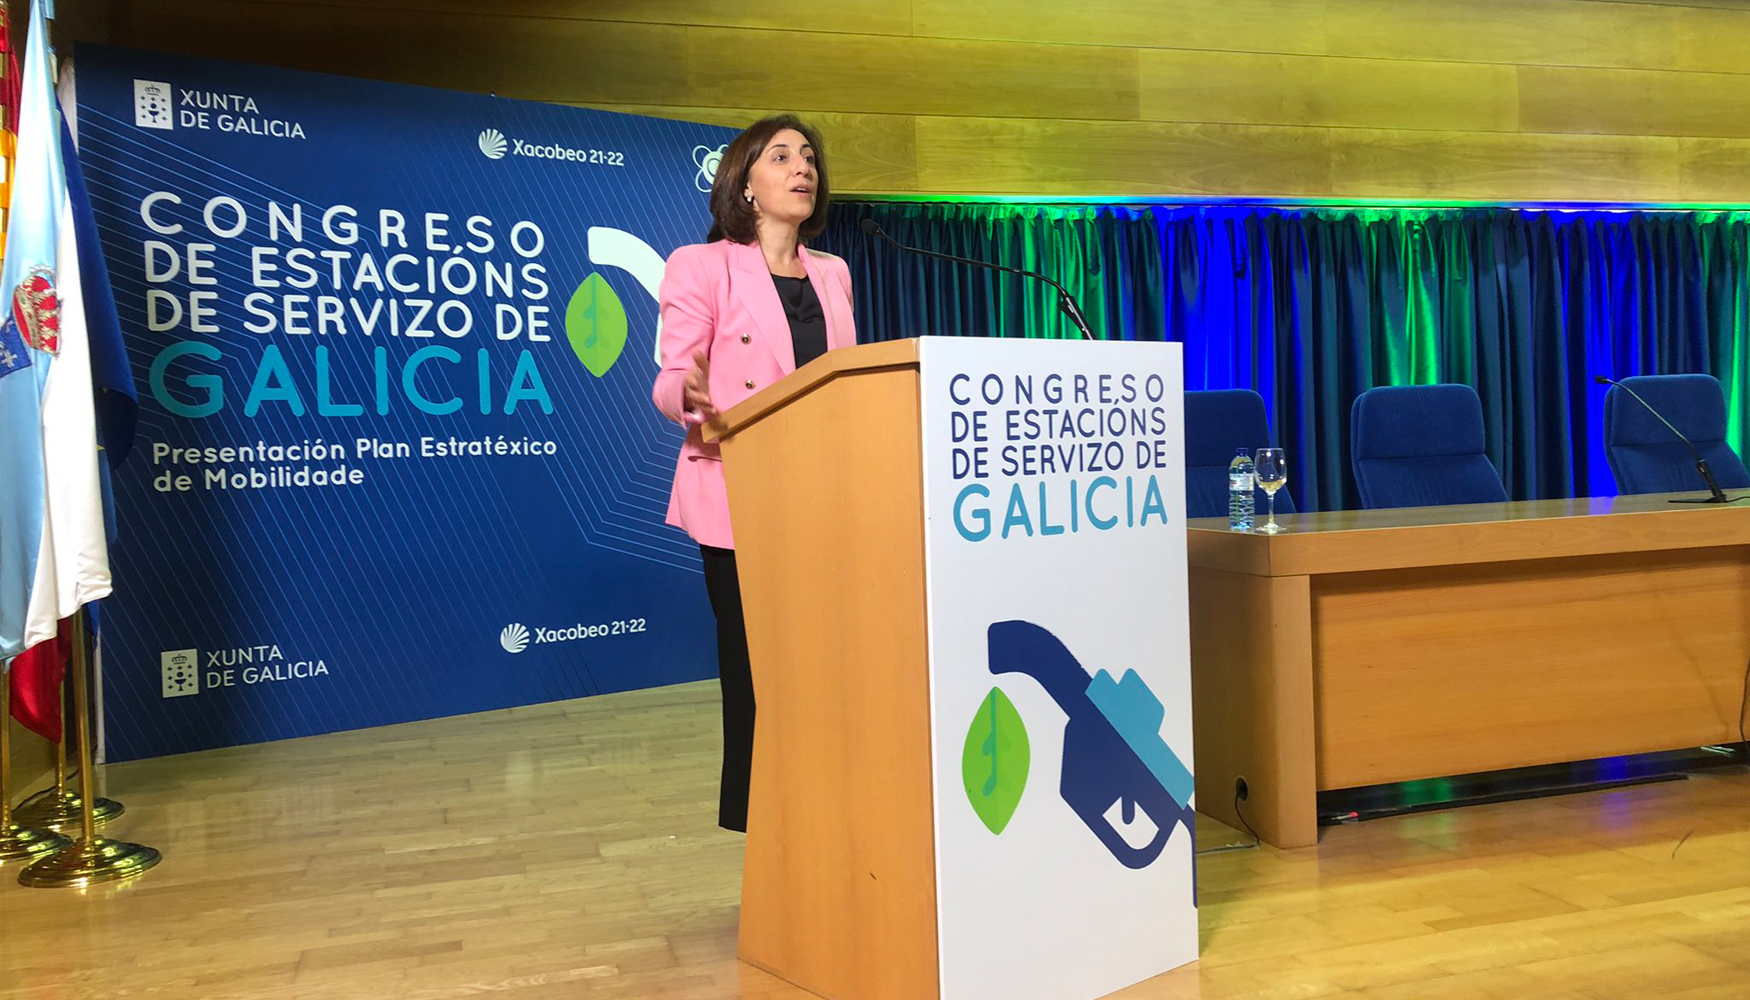 "Los datos revelan que, en los ltimos tiempos, el sector gallego ha invertido ms de 130 millones de euros en mejorar su mbito medioambiental...